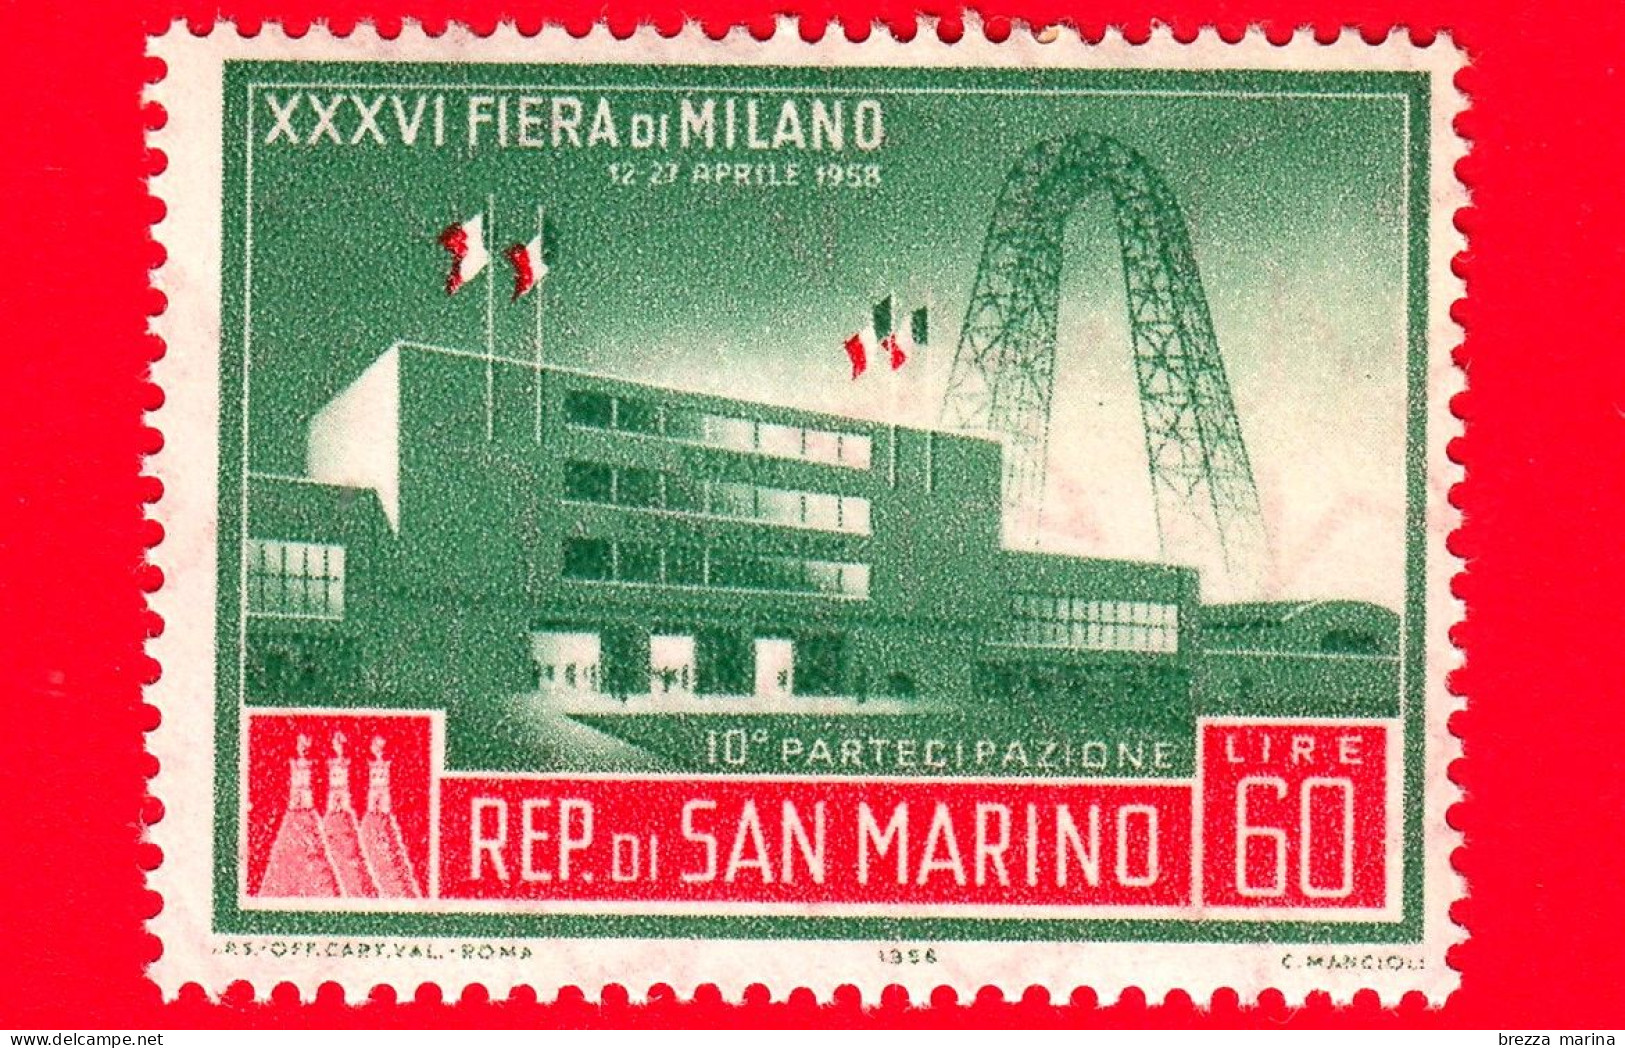 Nuovo - MNH - SAN MARINO - 1958 - XXXVI Fiera Di Milano - 10 Partecipazione - 60 - Unused Stamps